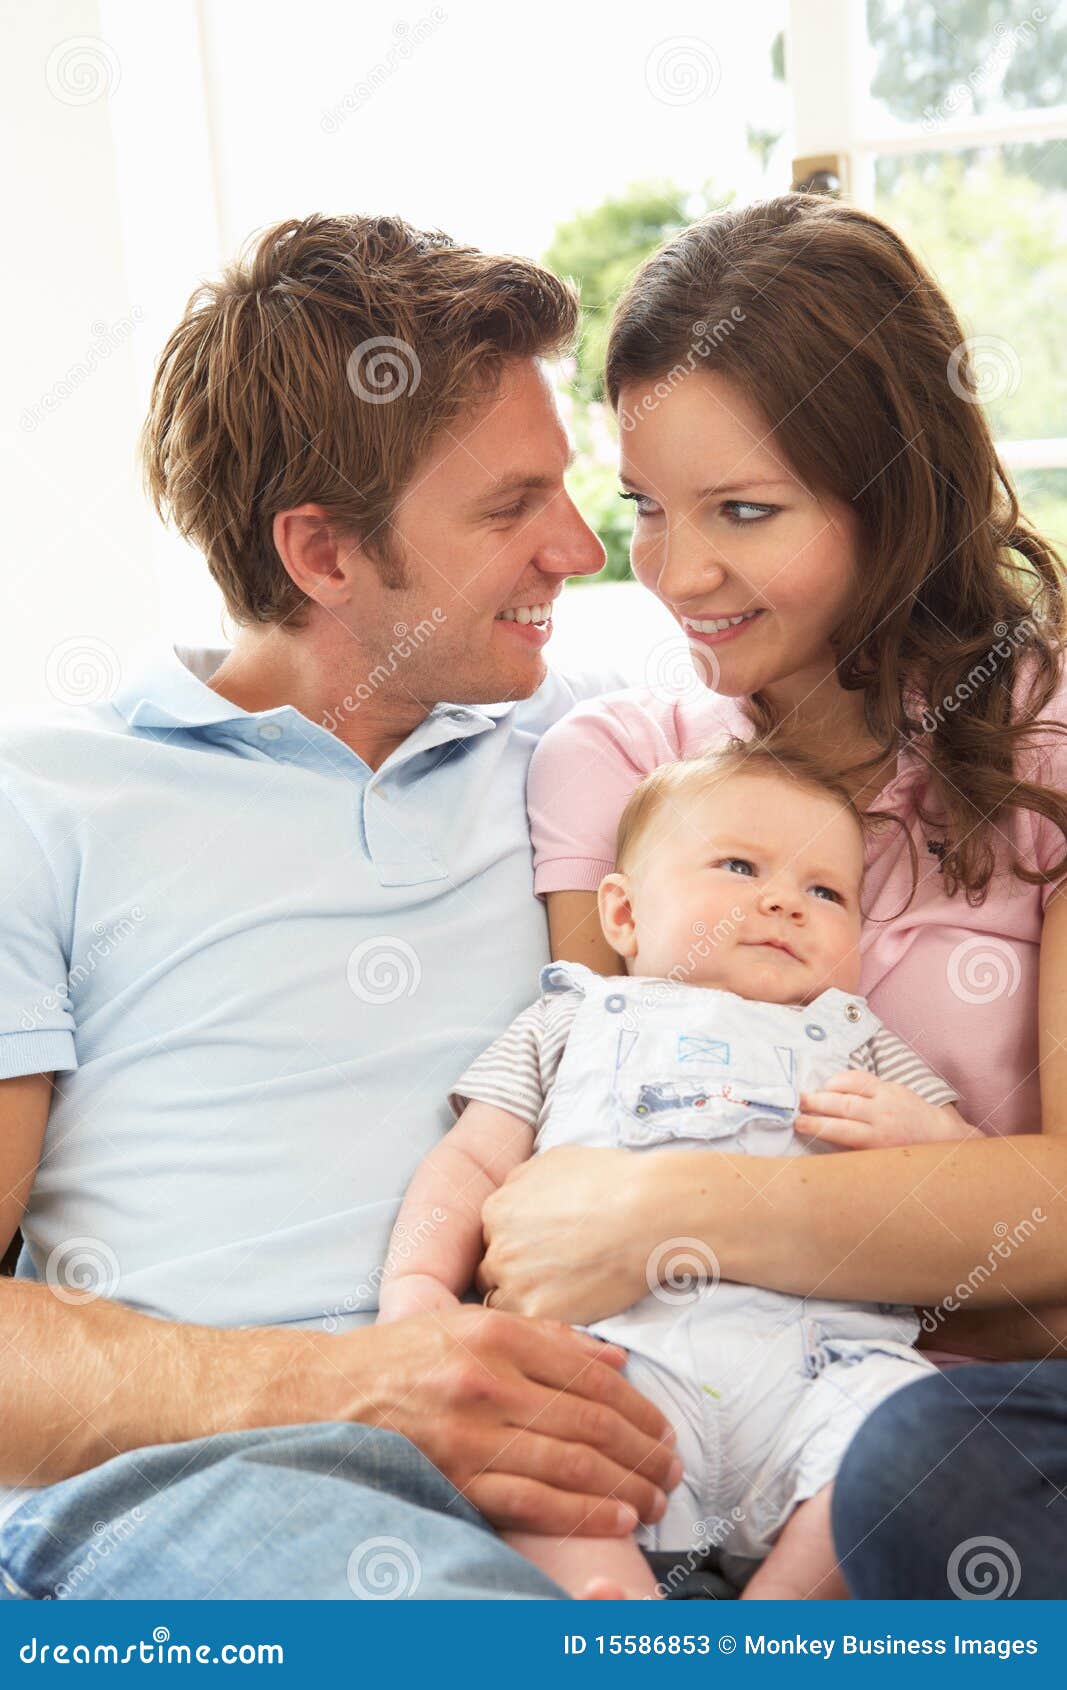 parents cuddling newborn baby boy at home